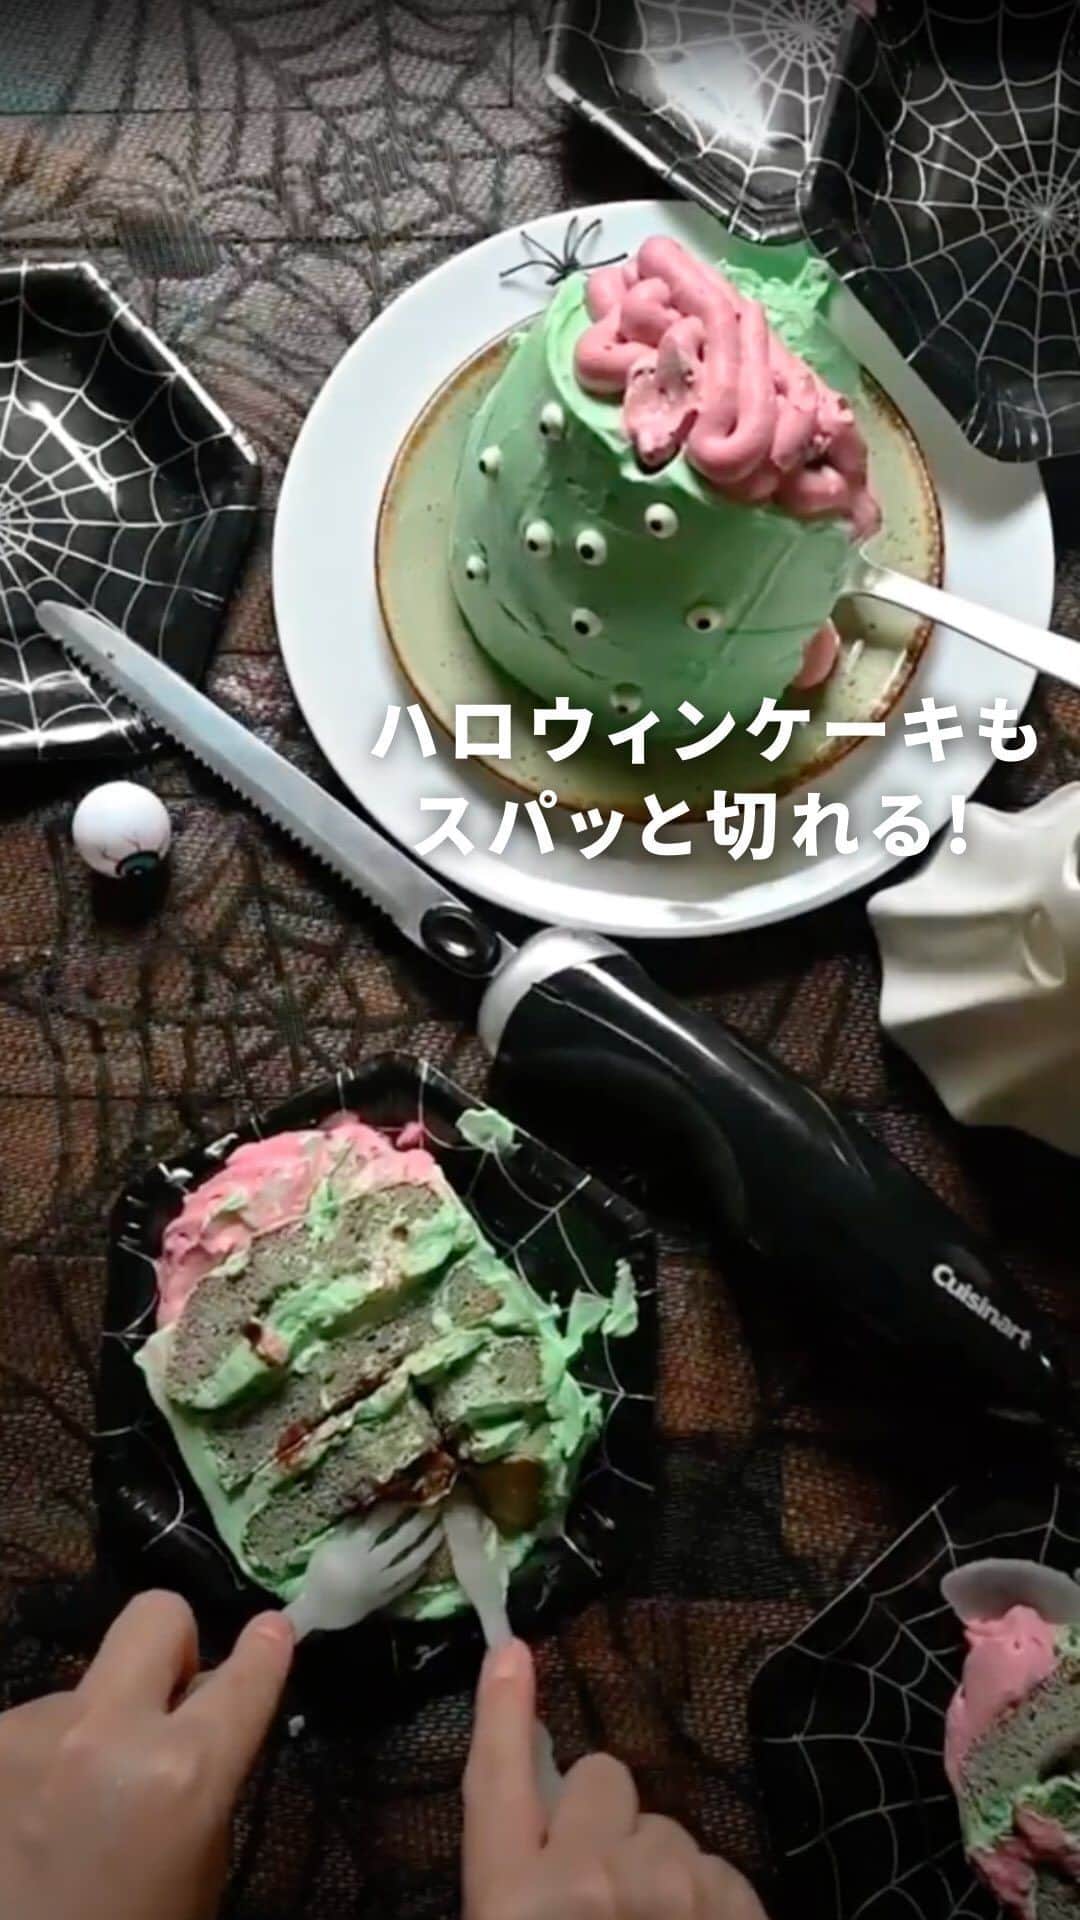 Cuisinart(クイジナート)ジャパン公式アカウントのインスタグラム：「今月末はハロウィン🎃 パーティーに大活躍する「電動ナイフ」✨   今年はどんなケーキやお料理で ハロウィンパーティーを楽しみますか？！   手動では切りにくい柔らかいスポンジケーキも クイジナートの「電動ナイフ」なら簡単きれいに切ることができます☝   重なった2枚の刃が素早く前後に動き 力を入れずにスッとストレスフリーでカット🔪   薄く切りたいローストビーフや、フランスパンのスライス、 断面をきれいに見せたいサンドウィッチにも。   パーティーシーンに欠かせないアイテムです💫   動画の最後にケーキを倒したのは誰かな〜?👻👻 コメント欄で教えてくださいね♪   ・。・。・。・。・。・ 📷Photo： @yutaokashi   🍞Item：電動ナイフ   🔍CEK-30J ・。・。・。・。・。・   ⚠︎お子様がいるご家庭は、電動ナイフの取り扱いに十分ご注意ください。 ーーーーー クイジナート公式HPでは、毎日の料理が楽しくなる様々な製品情報やレシピを公開中♪ 詳しくはプロフィールのリンクから！ ▶️ @cuisine_art ーーーーー   #クイジナート #cuisinart #クイジナートのある生活 #クイジナートLOVE #クイジナート電動ナイフ #丁寧な暮らし #美味しい時間 #料理好きな人とつながりたい #暮らしを楽しむ #クッキングラマー #キッチンアイテム #キッチングッズ #キッチンインテリア #料理好き #料理好きな人と繋がりたい #電動ナイフ #手作りケーキ #ハロウィン #ハロウィンパーティー #ハロウィンケーキ #ハロウィンケーキ🎃 #ハロウィンメニュー #ハロウィン好き #手作りスイーツ #おうちごはん #子どものいる暮らし #子どもと料理 #今日のごはん #ハロウィン料理 #おうちハロウィン」